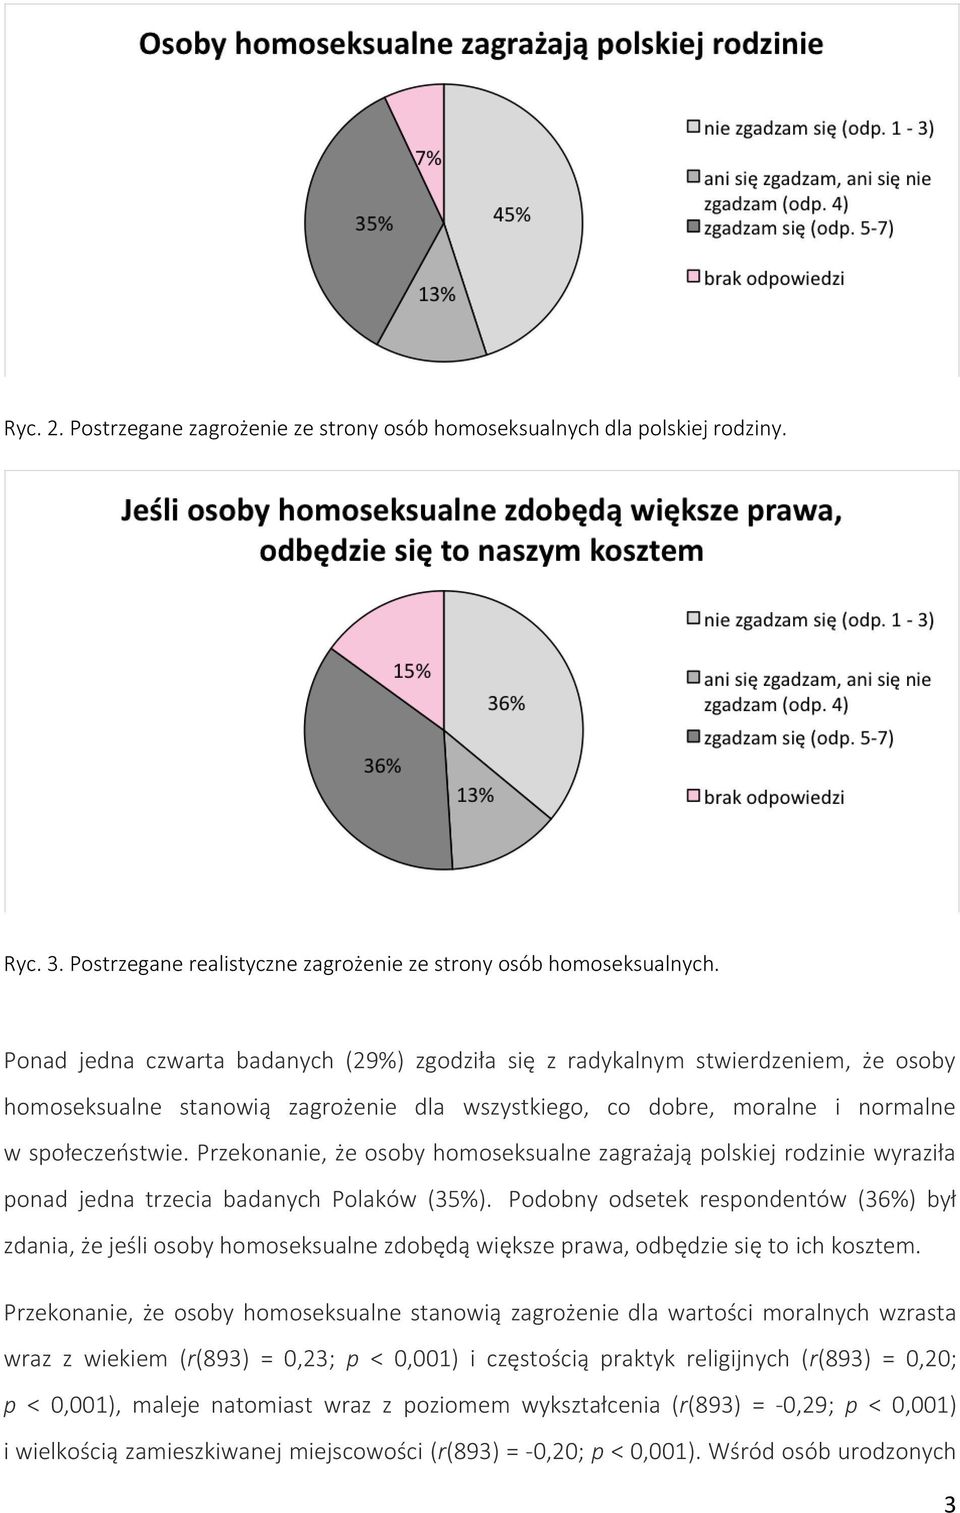 Przekonanie, że osoby homoseksualne zagrażają polskiej rodzinie wyraziła ponad jedna trzecia badanych Polaków (35%).